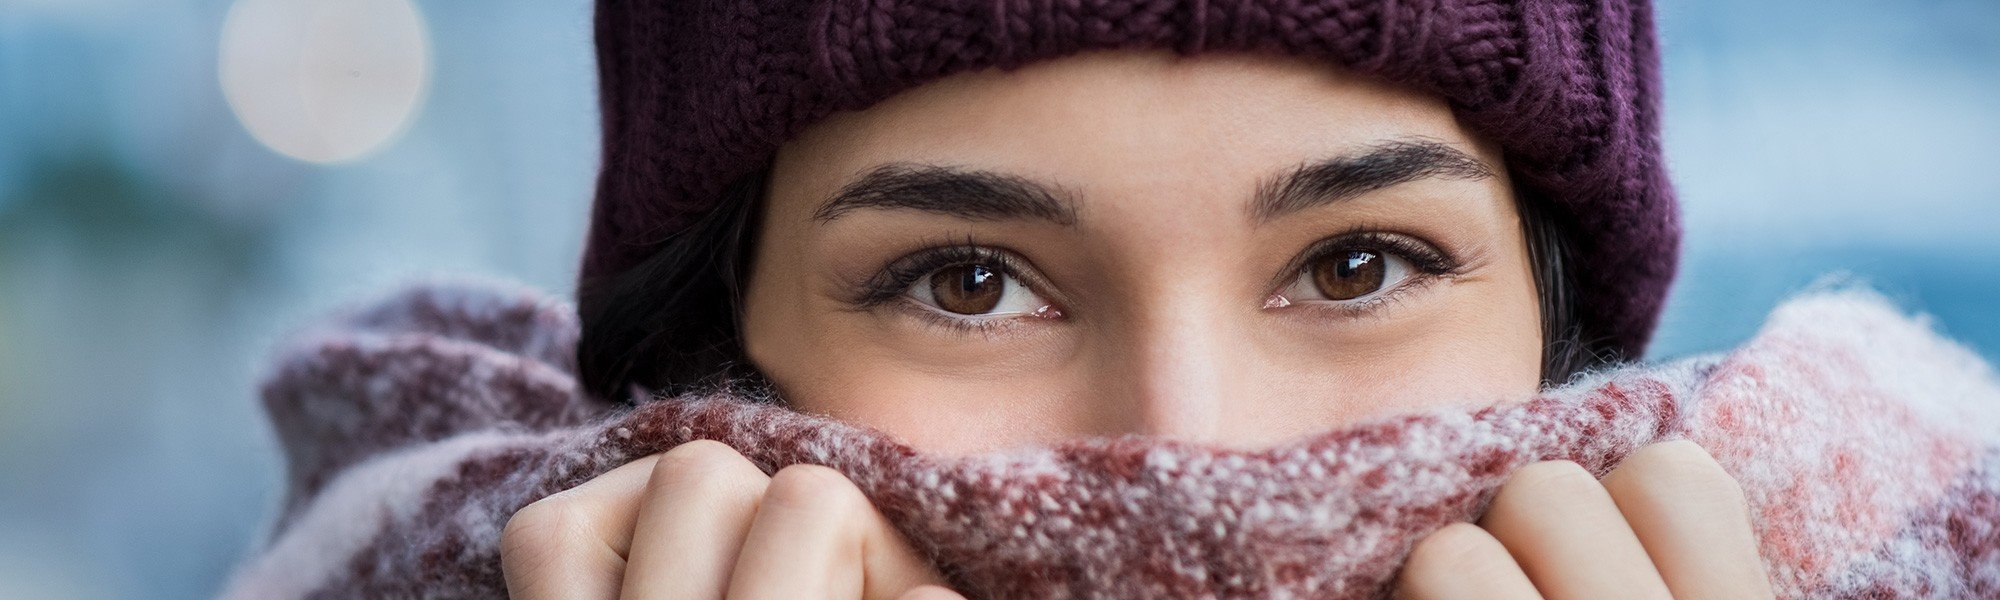 Comment réduire le risque d’attraper un rhume?